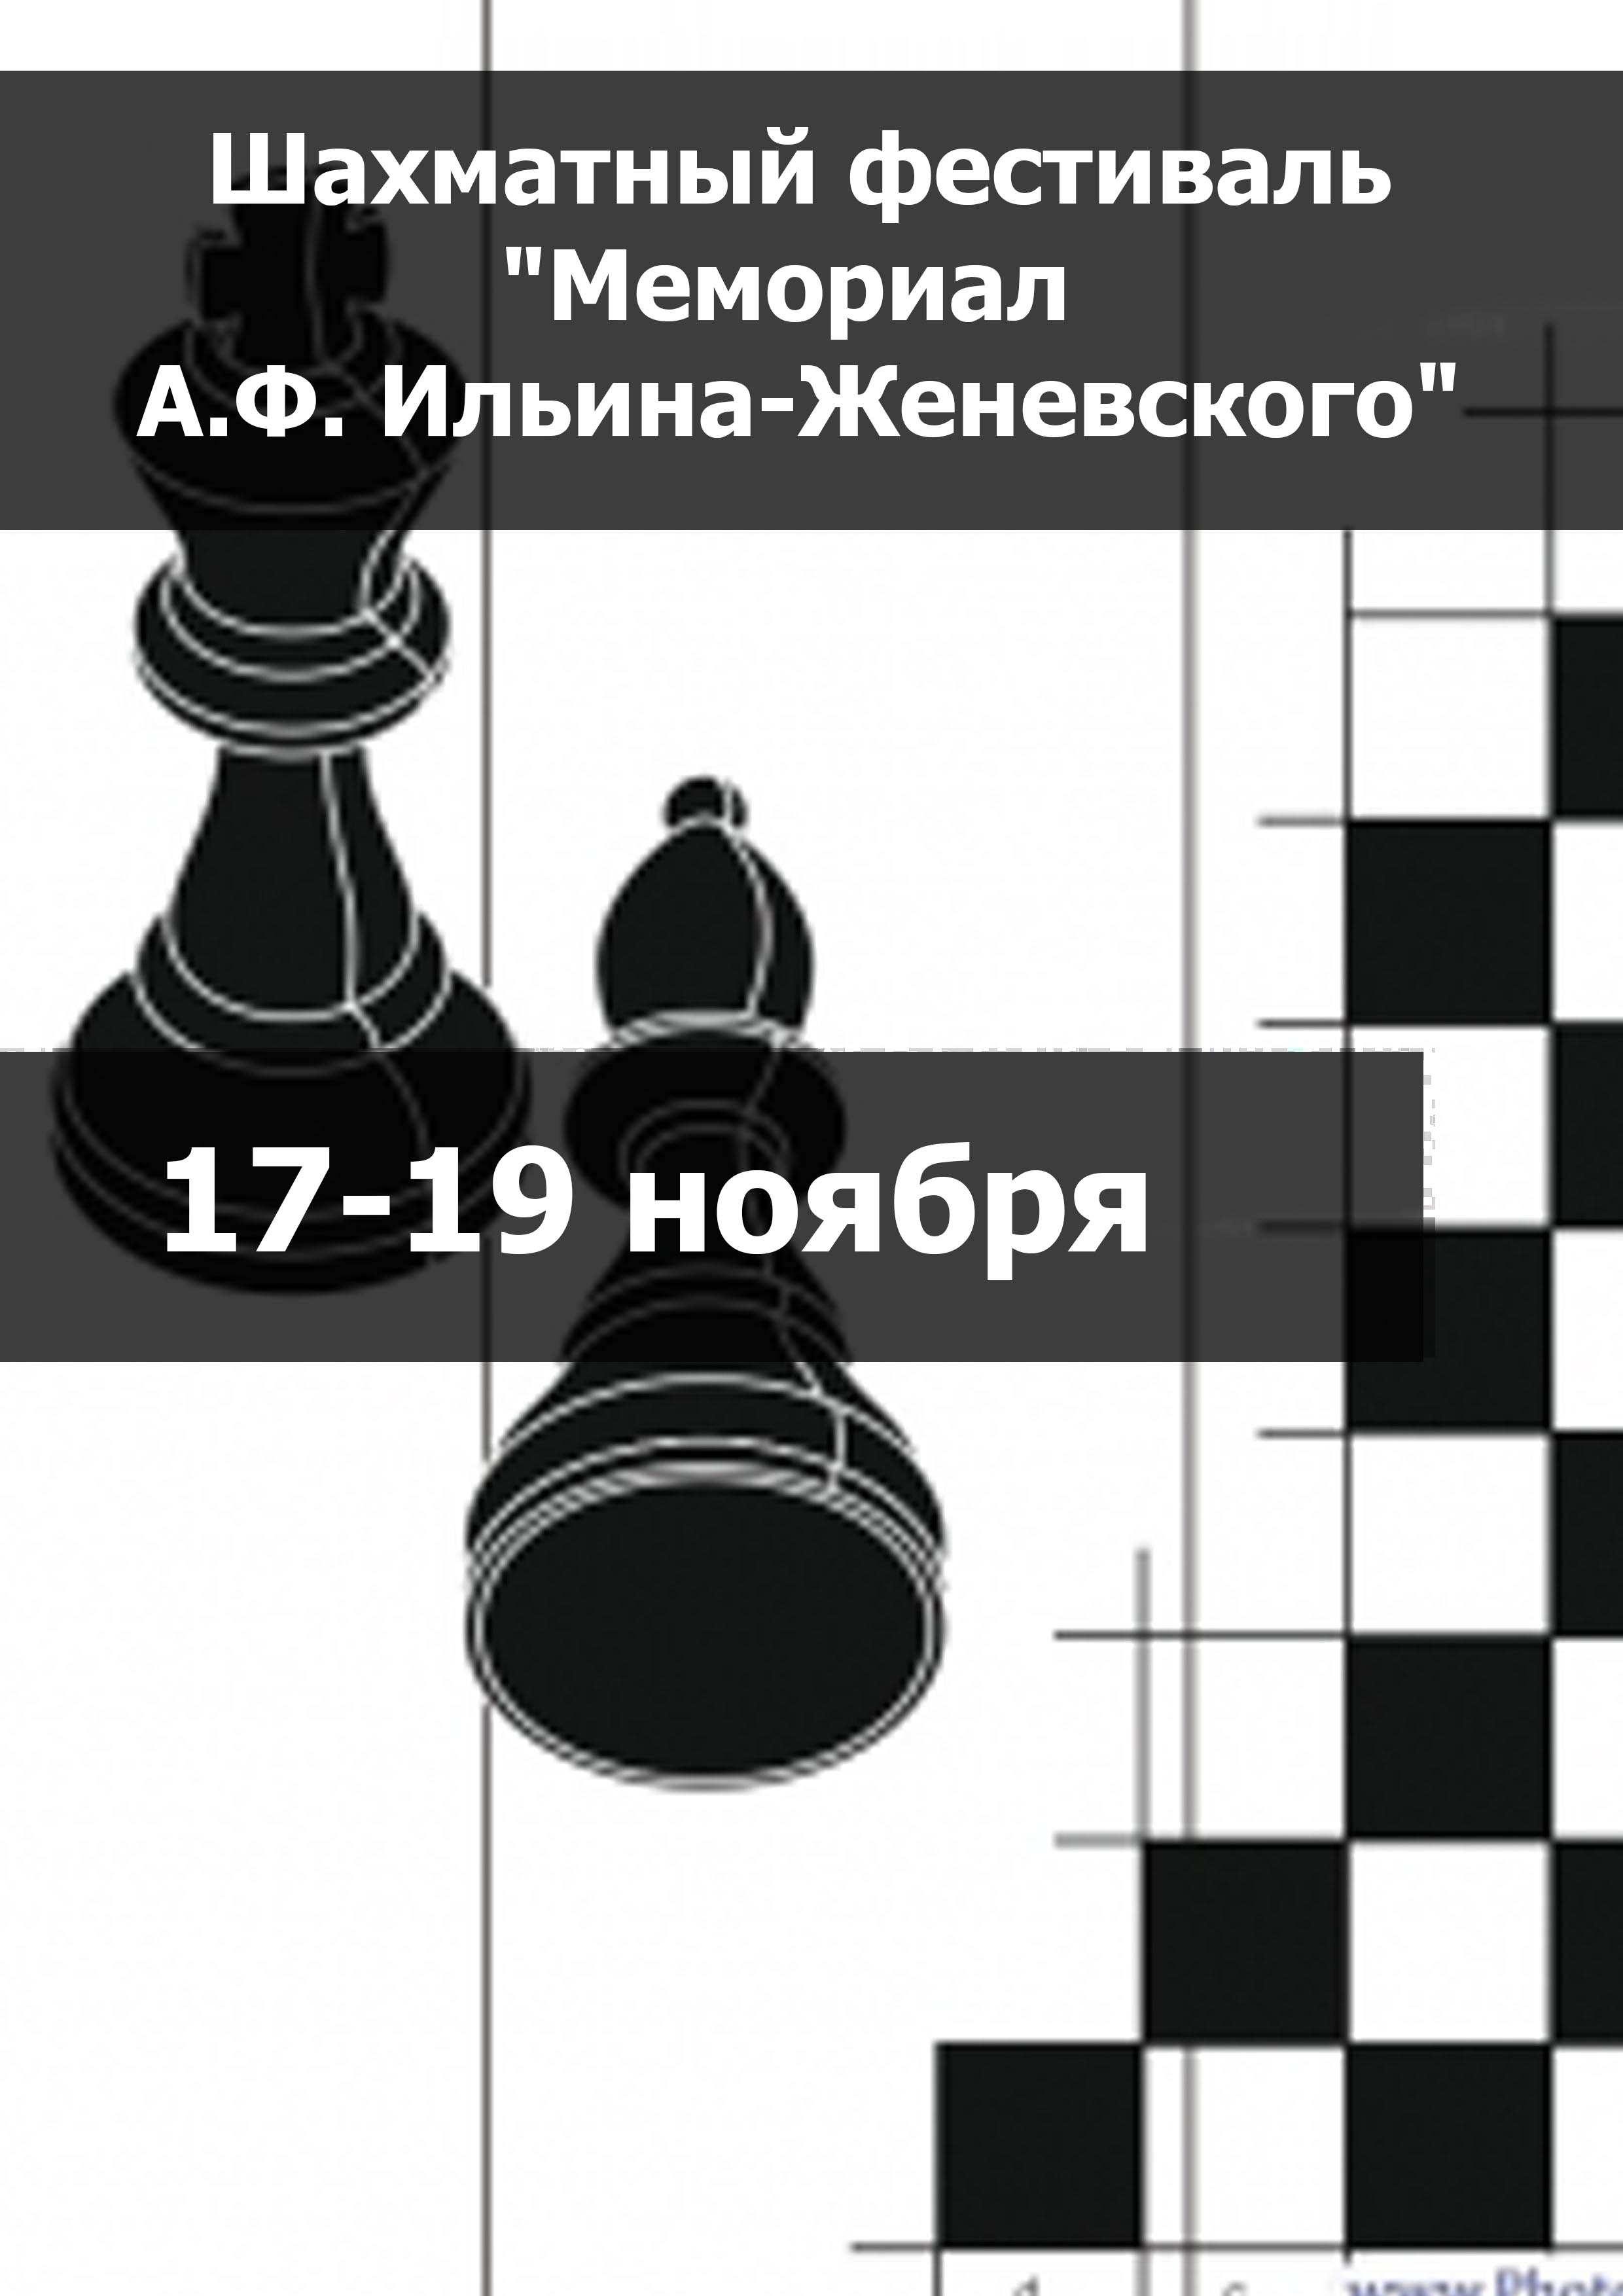 Шахматный фестиваль "Мемориал А.Ф. Ильина-Женевского" 17  ខែវិច្ឆិការបស់
 2023  នៅឆ្នាំ
 